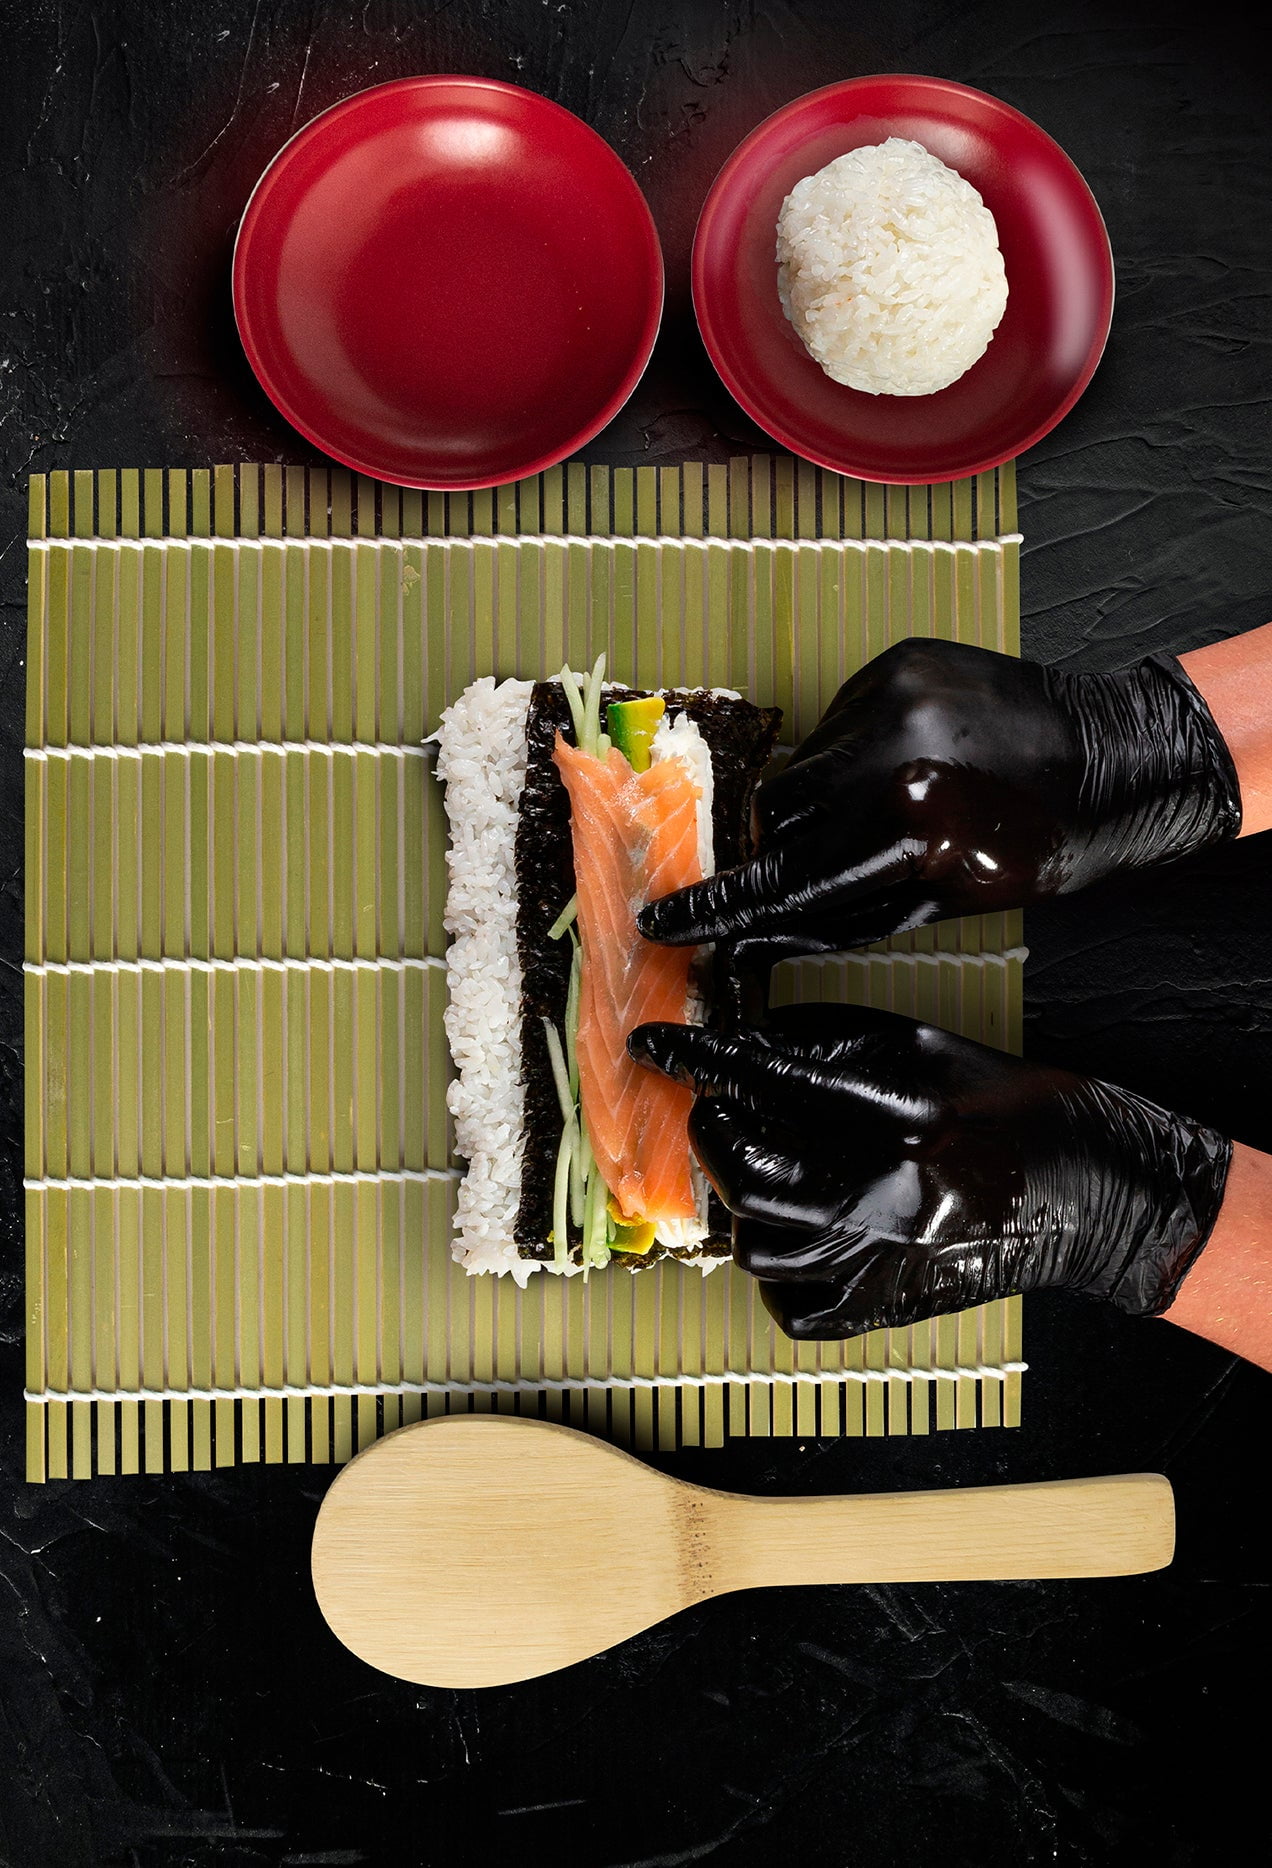 Eternal Sushi Making Kit